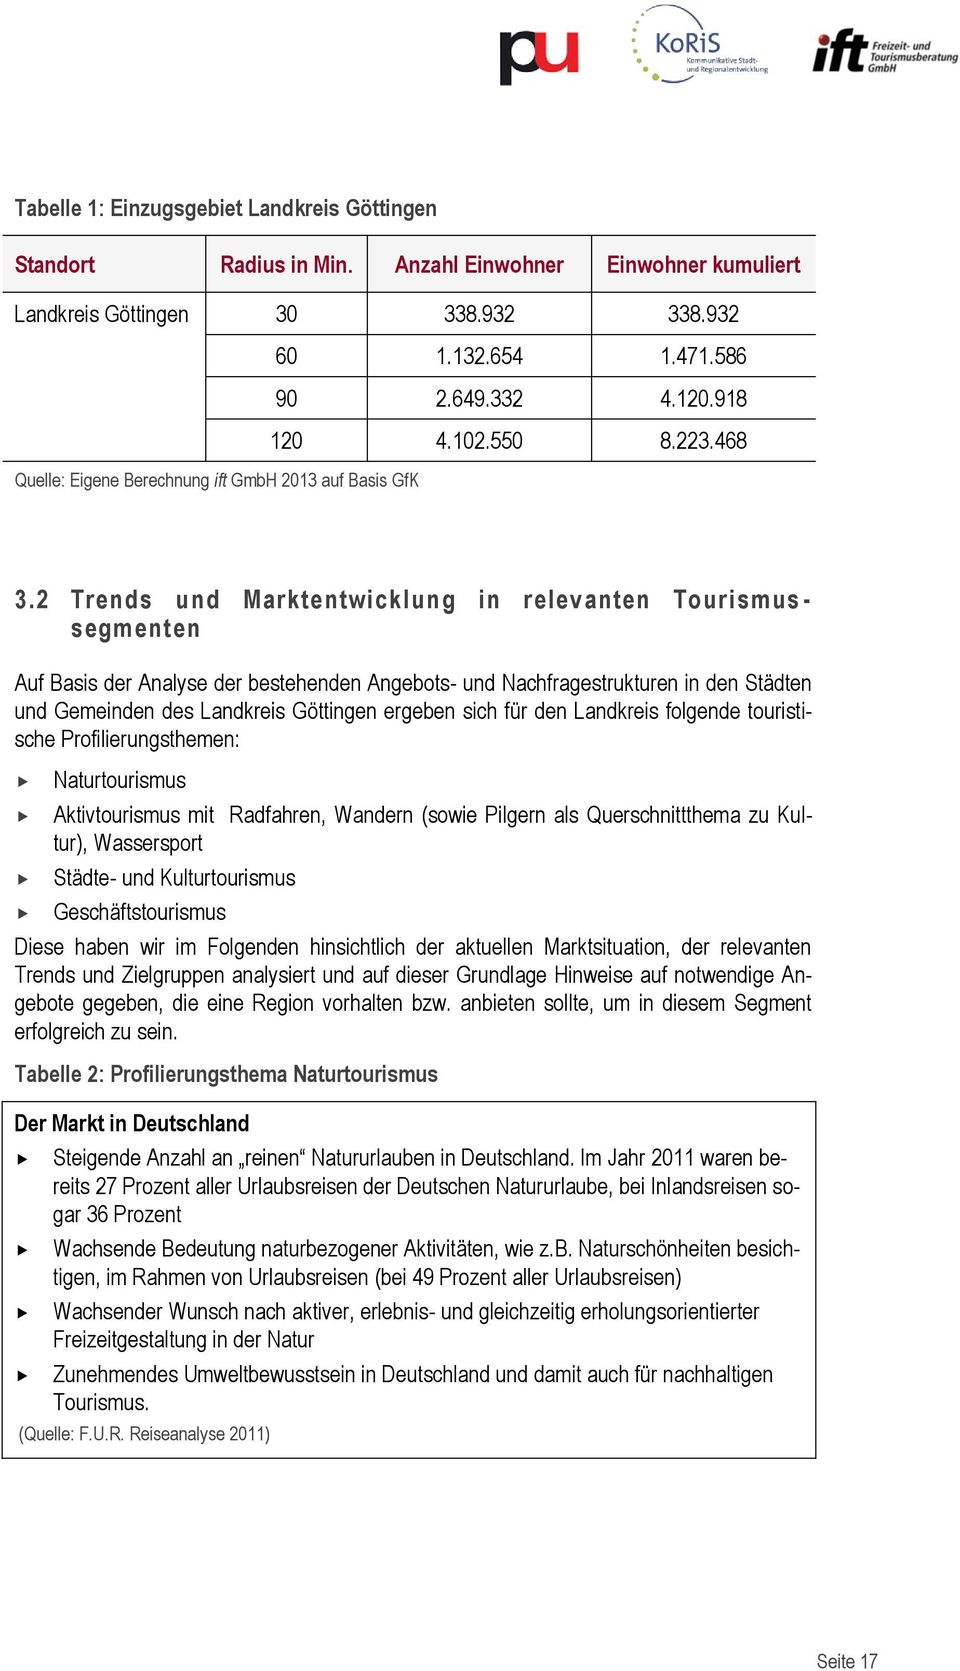 2 Trends und Marktentwicklung in relevanten Tourismus - segmenten Auf Basis der Analyse der bestehenden Angebots- und Nachfragestrukturen in den Städten und Gemeinden des Landkreis Göttingen ergeben